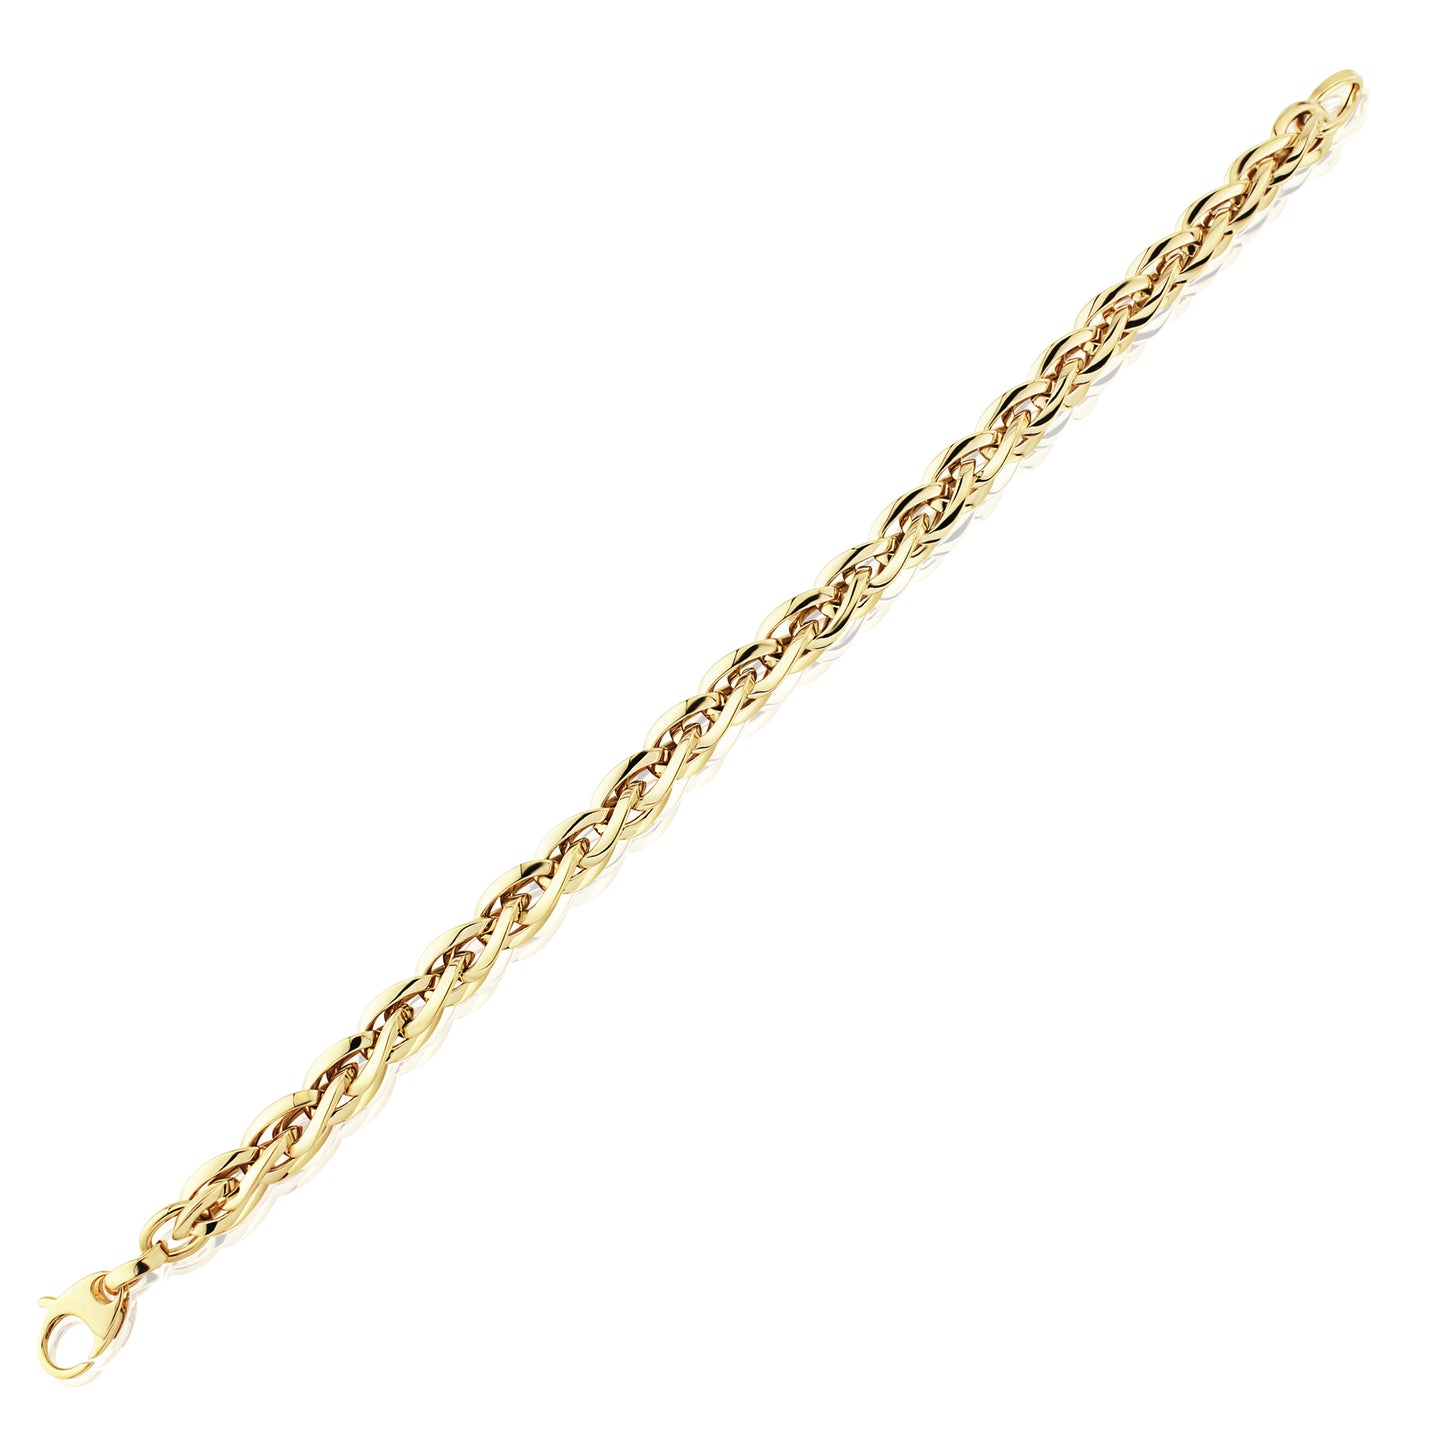 Ladies 9ct Gold  7mm Spiga Bracelet 7.5" - CNNR02958